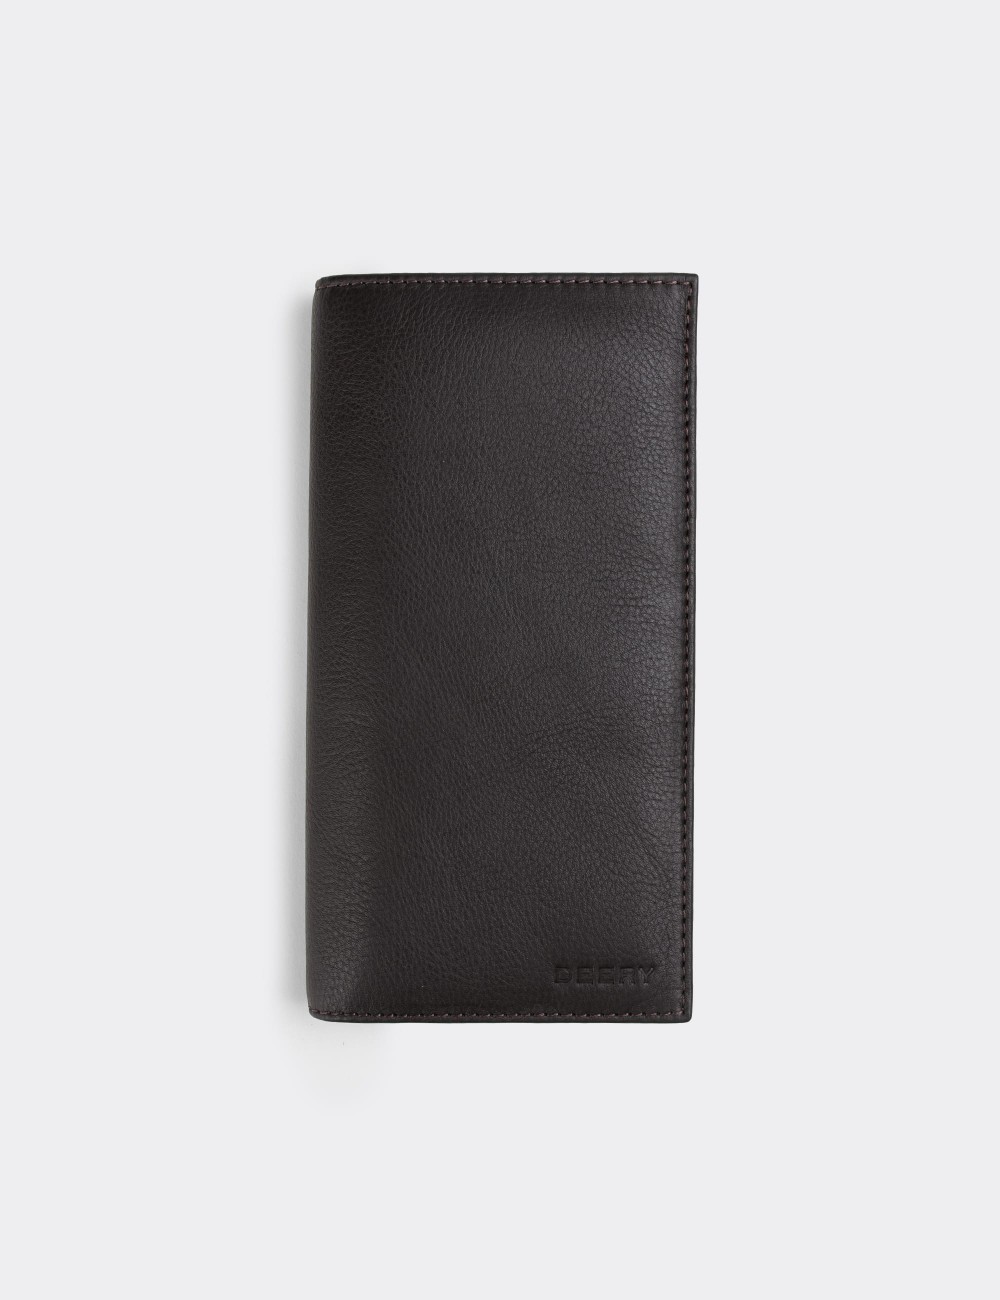  Leather Brown Men's Wallet - 00895MKHVZ01